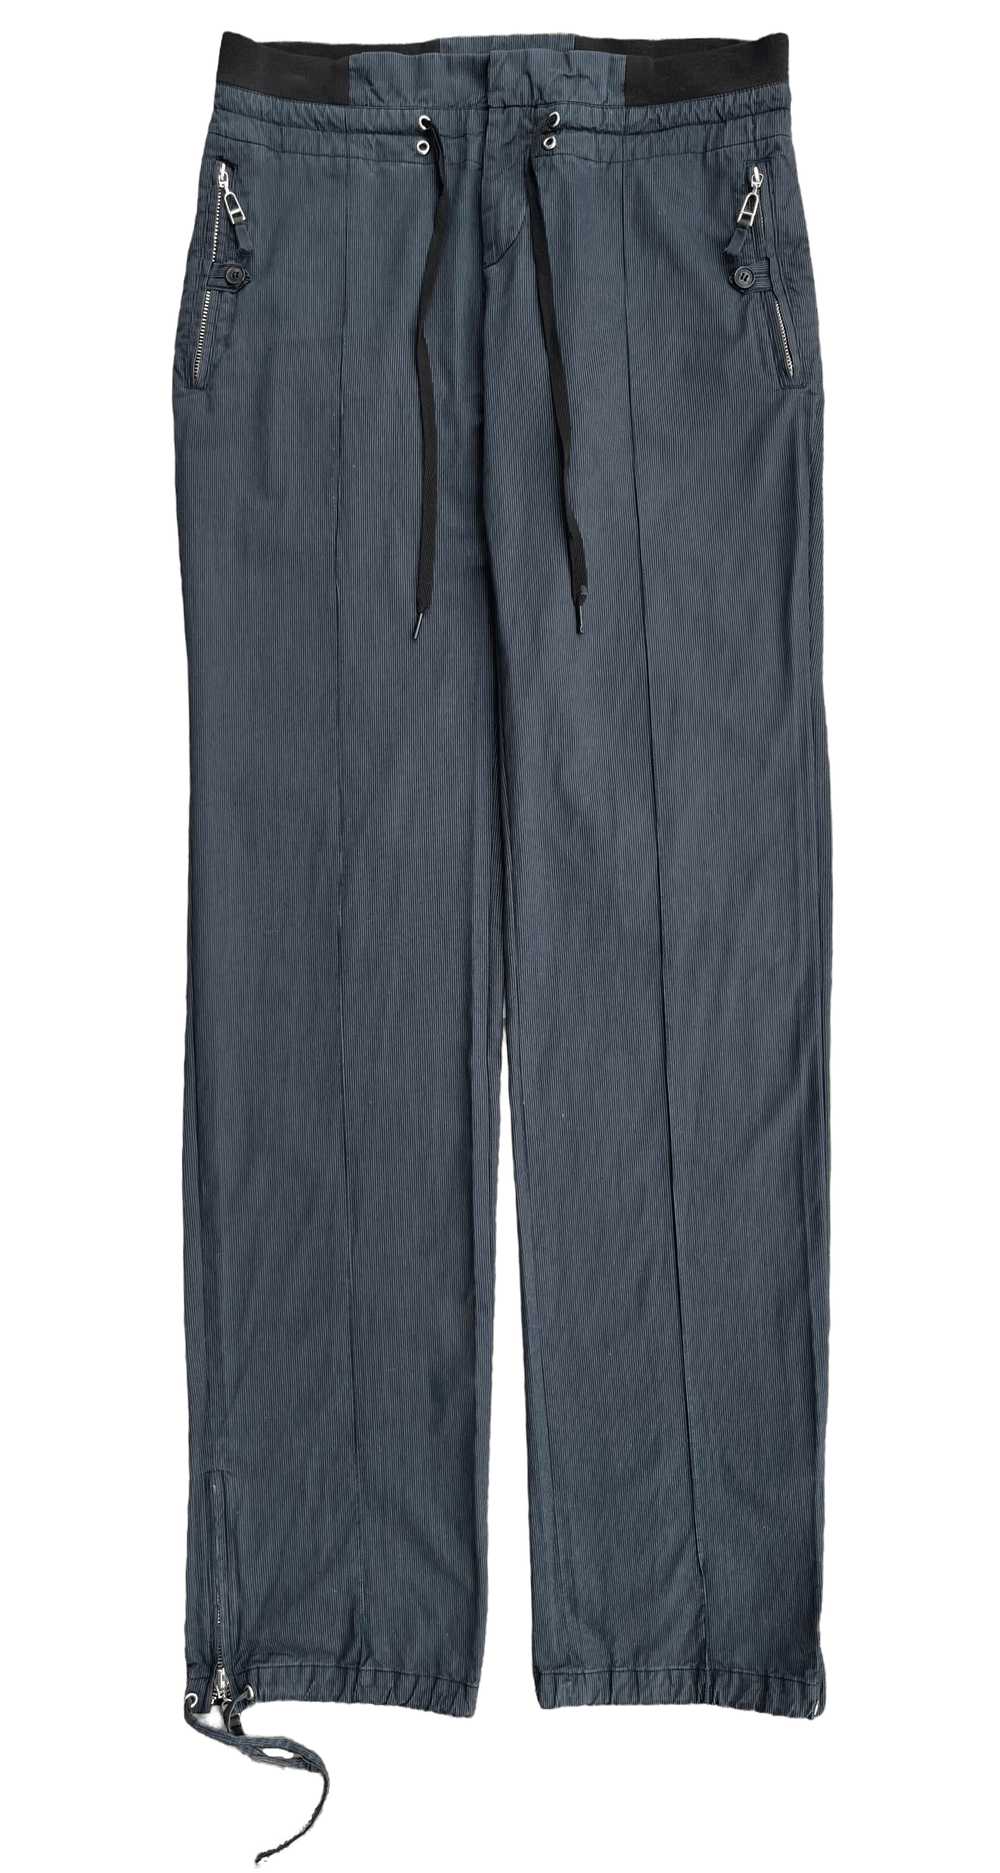 Kris Van Assche Pleated Zipper Trousers - image 2